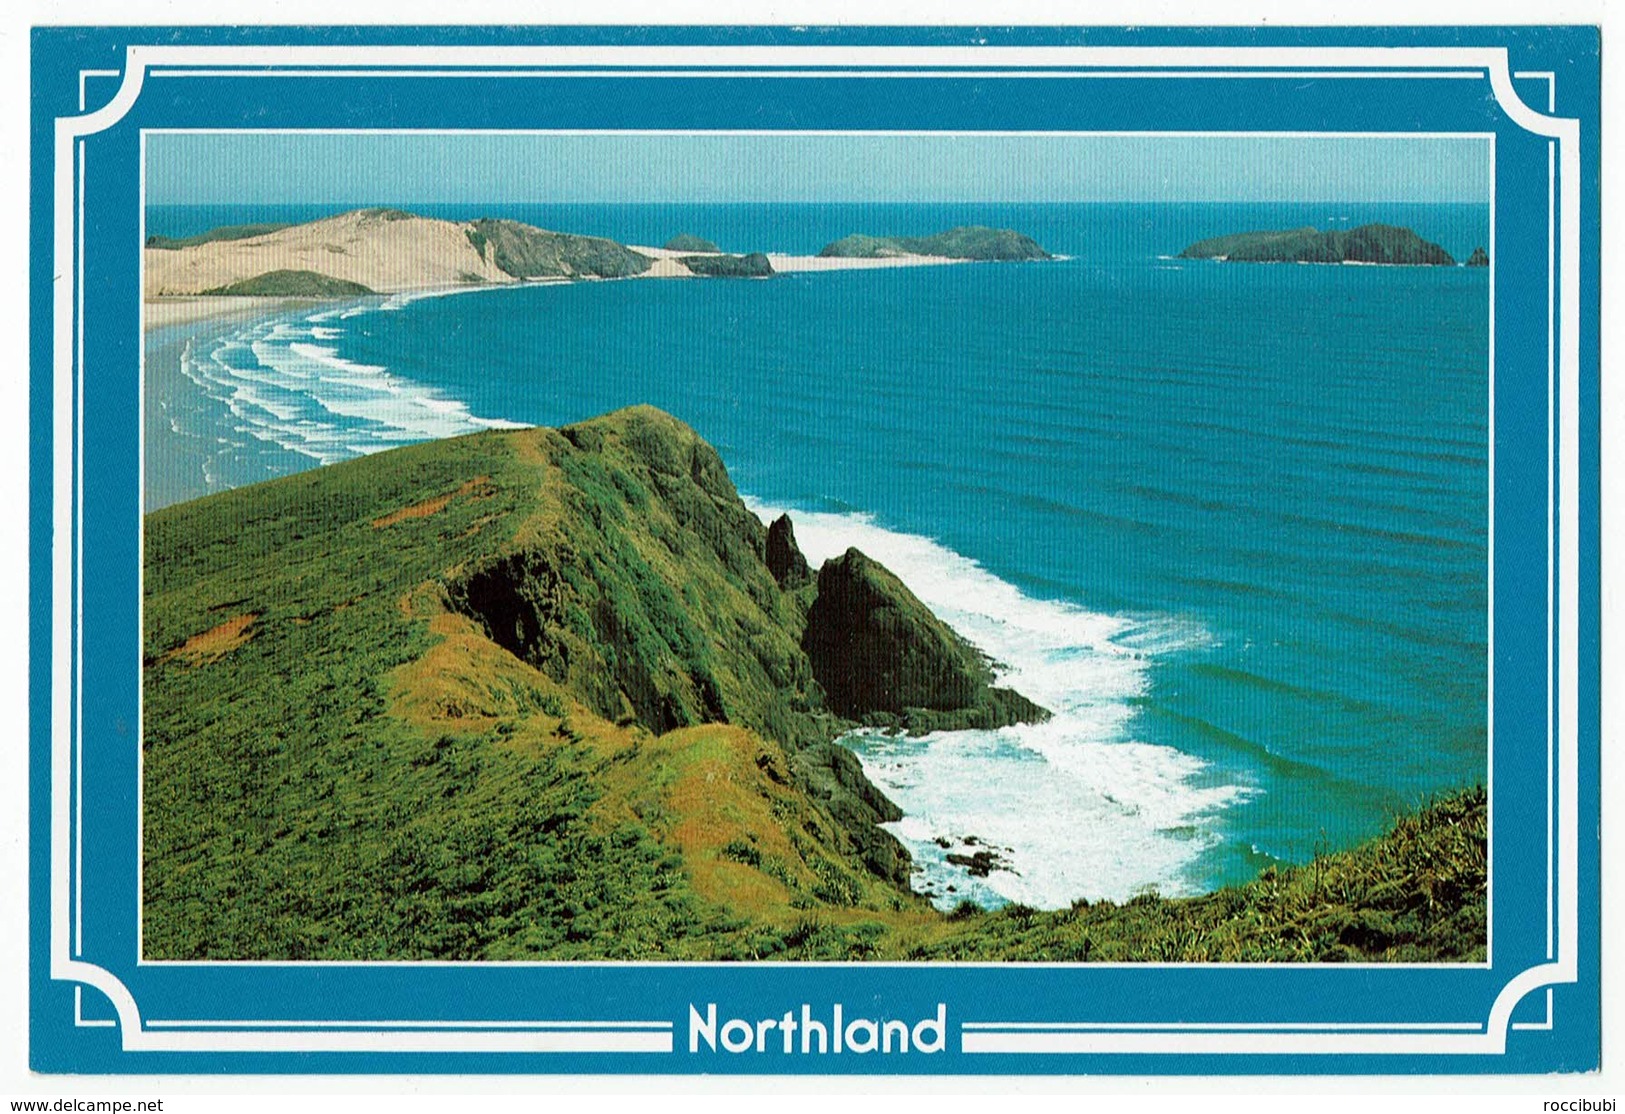 Neuseeland, New Zealand, Northland - New Zealand